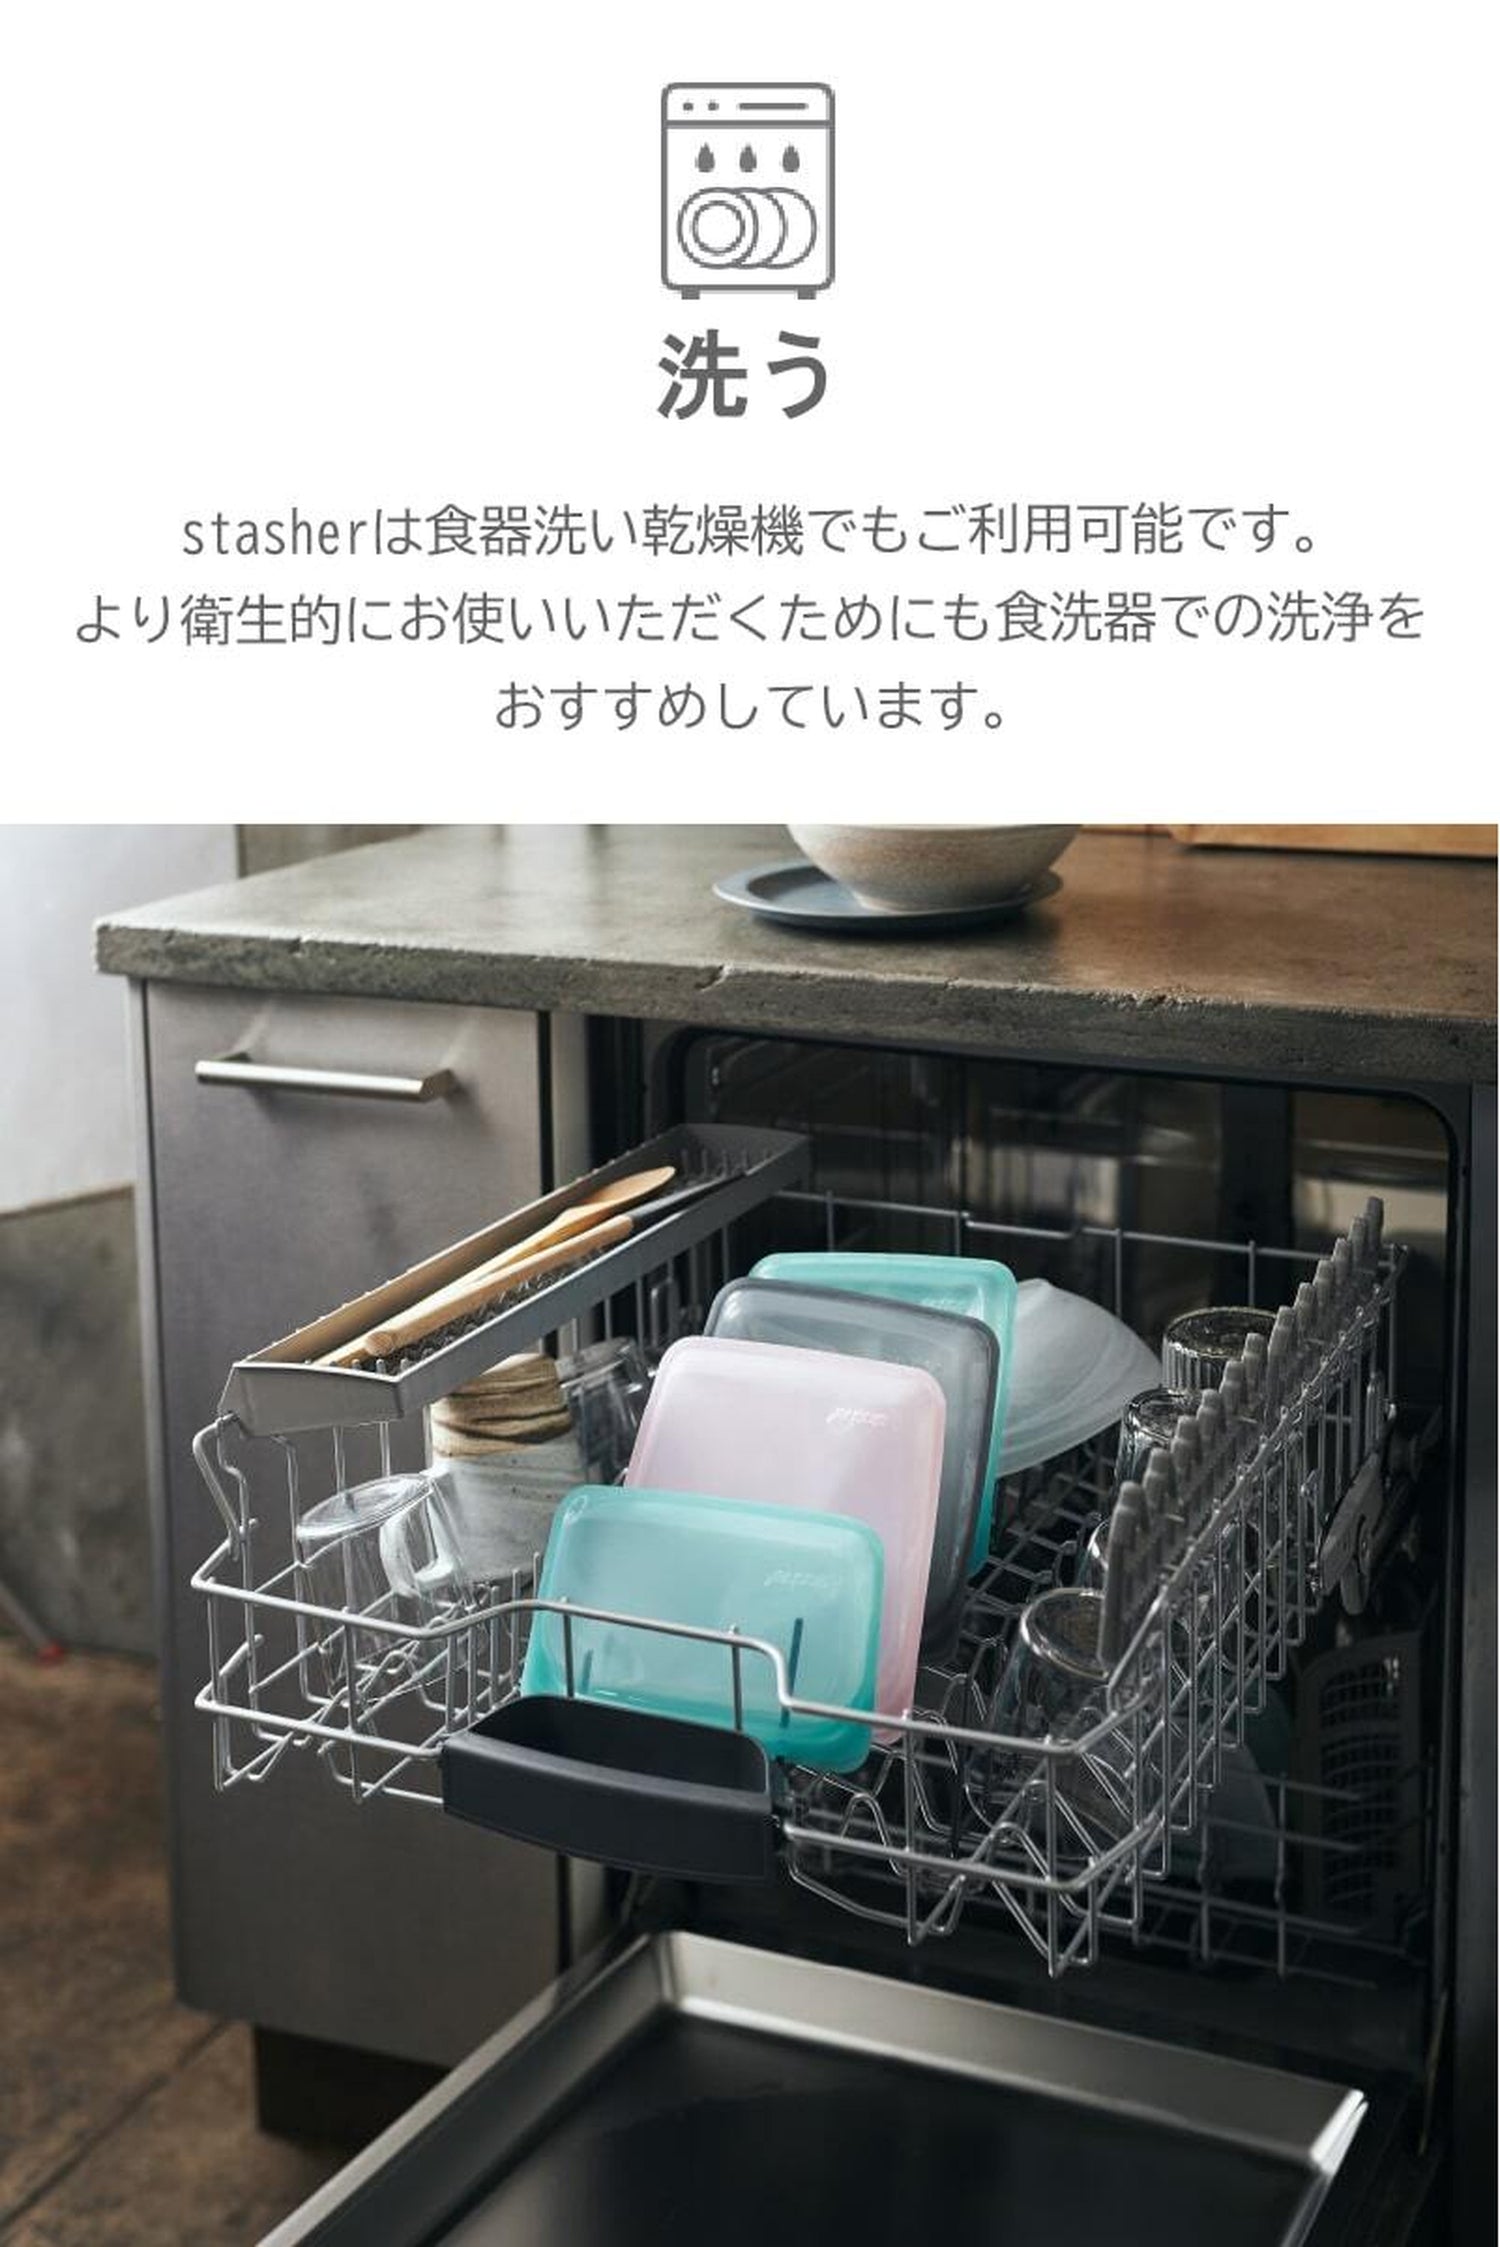 スタッシャー シリコンバッグ ボウル LLサイズ 新モデル stasher ボウルコレクション 日本正規品 2色